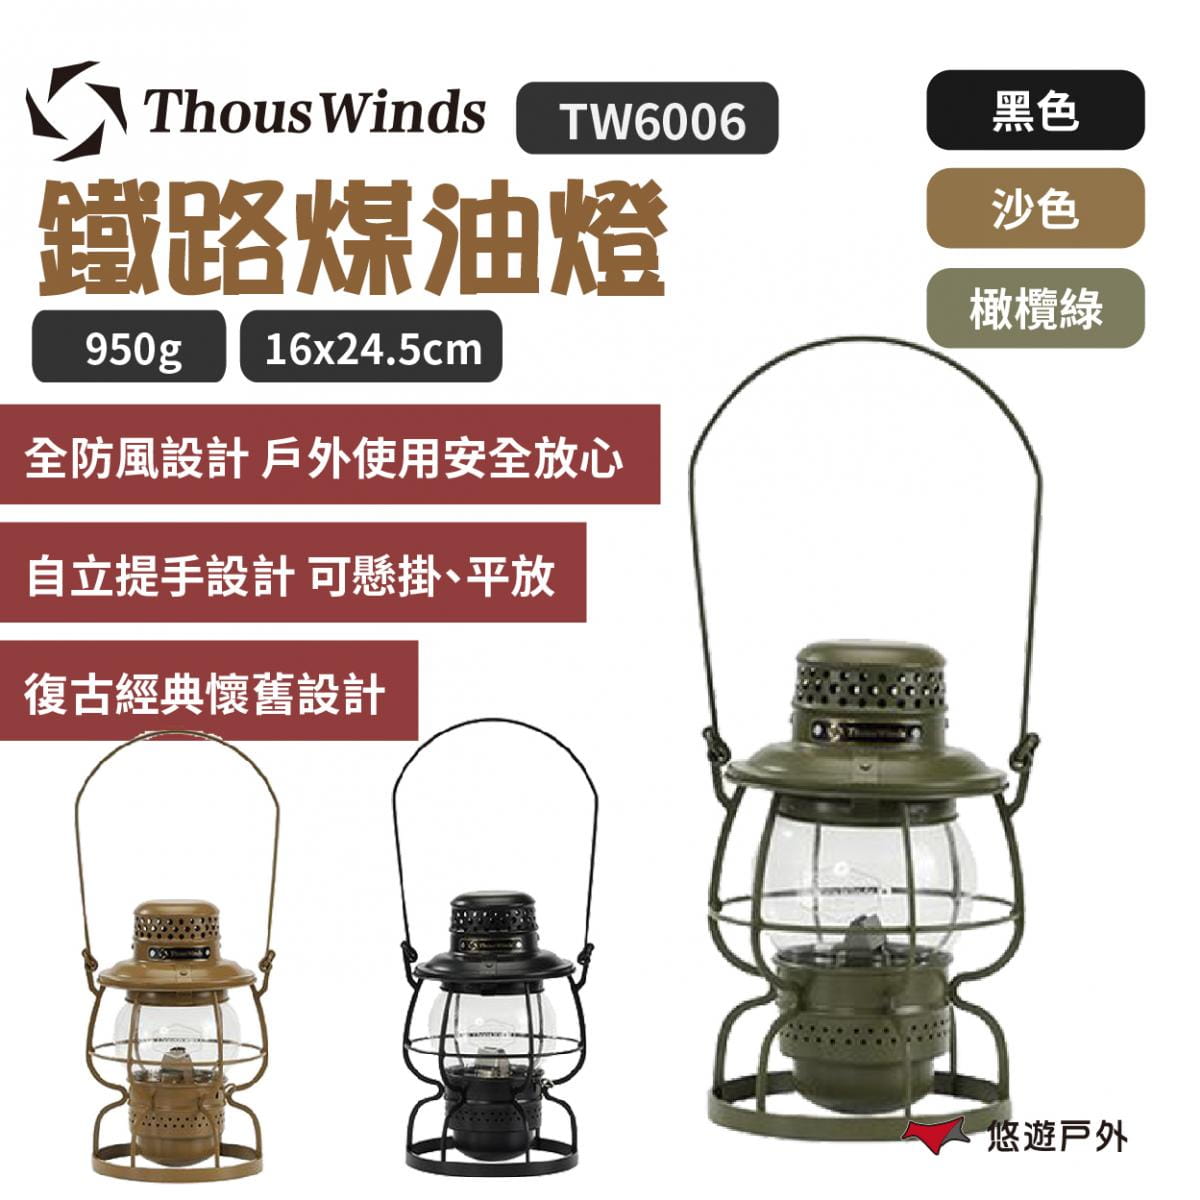 【Thous Winds】鐵路煤油燈 TW6006 悠遊戶外 1